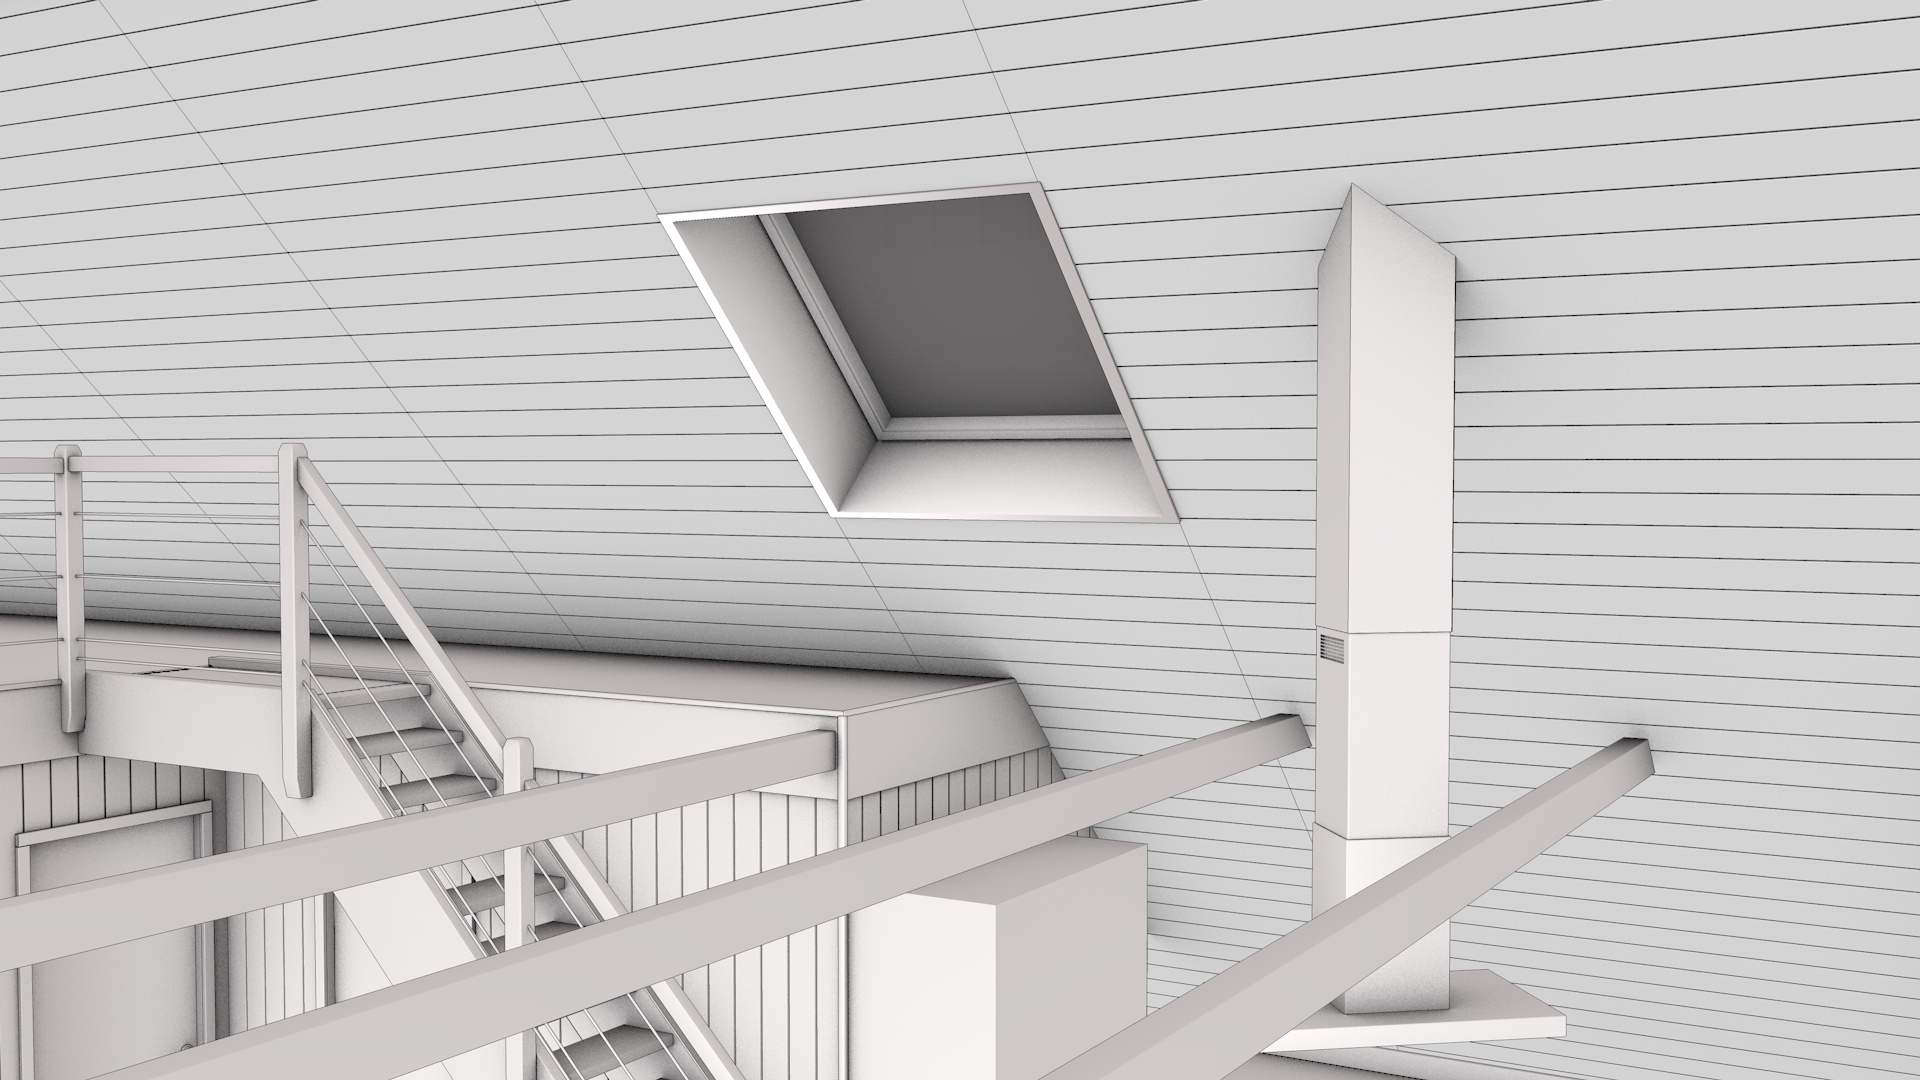 Entwurf Dach/Galerie Erweiterung